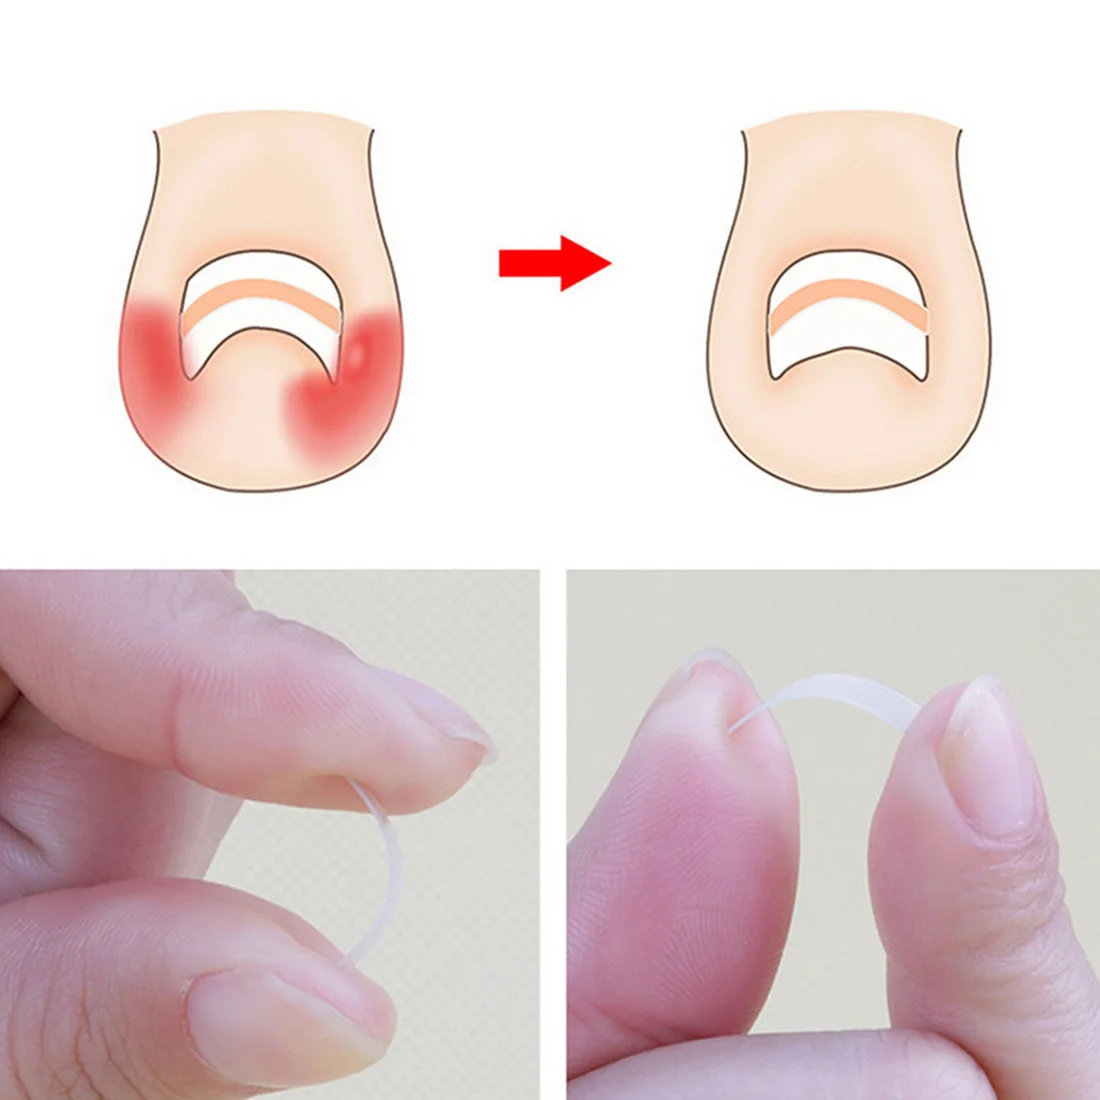 10 шт. инструмент для коррекции вросших ногтей лечения эластичная наклейка зажим